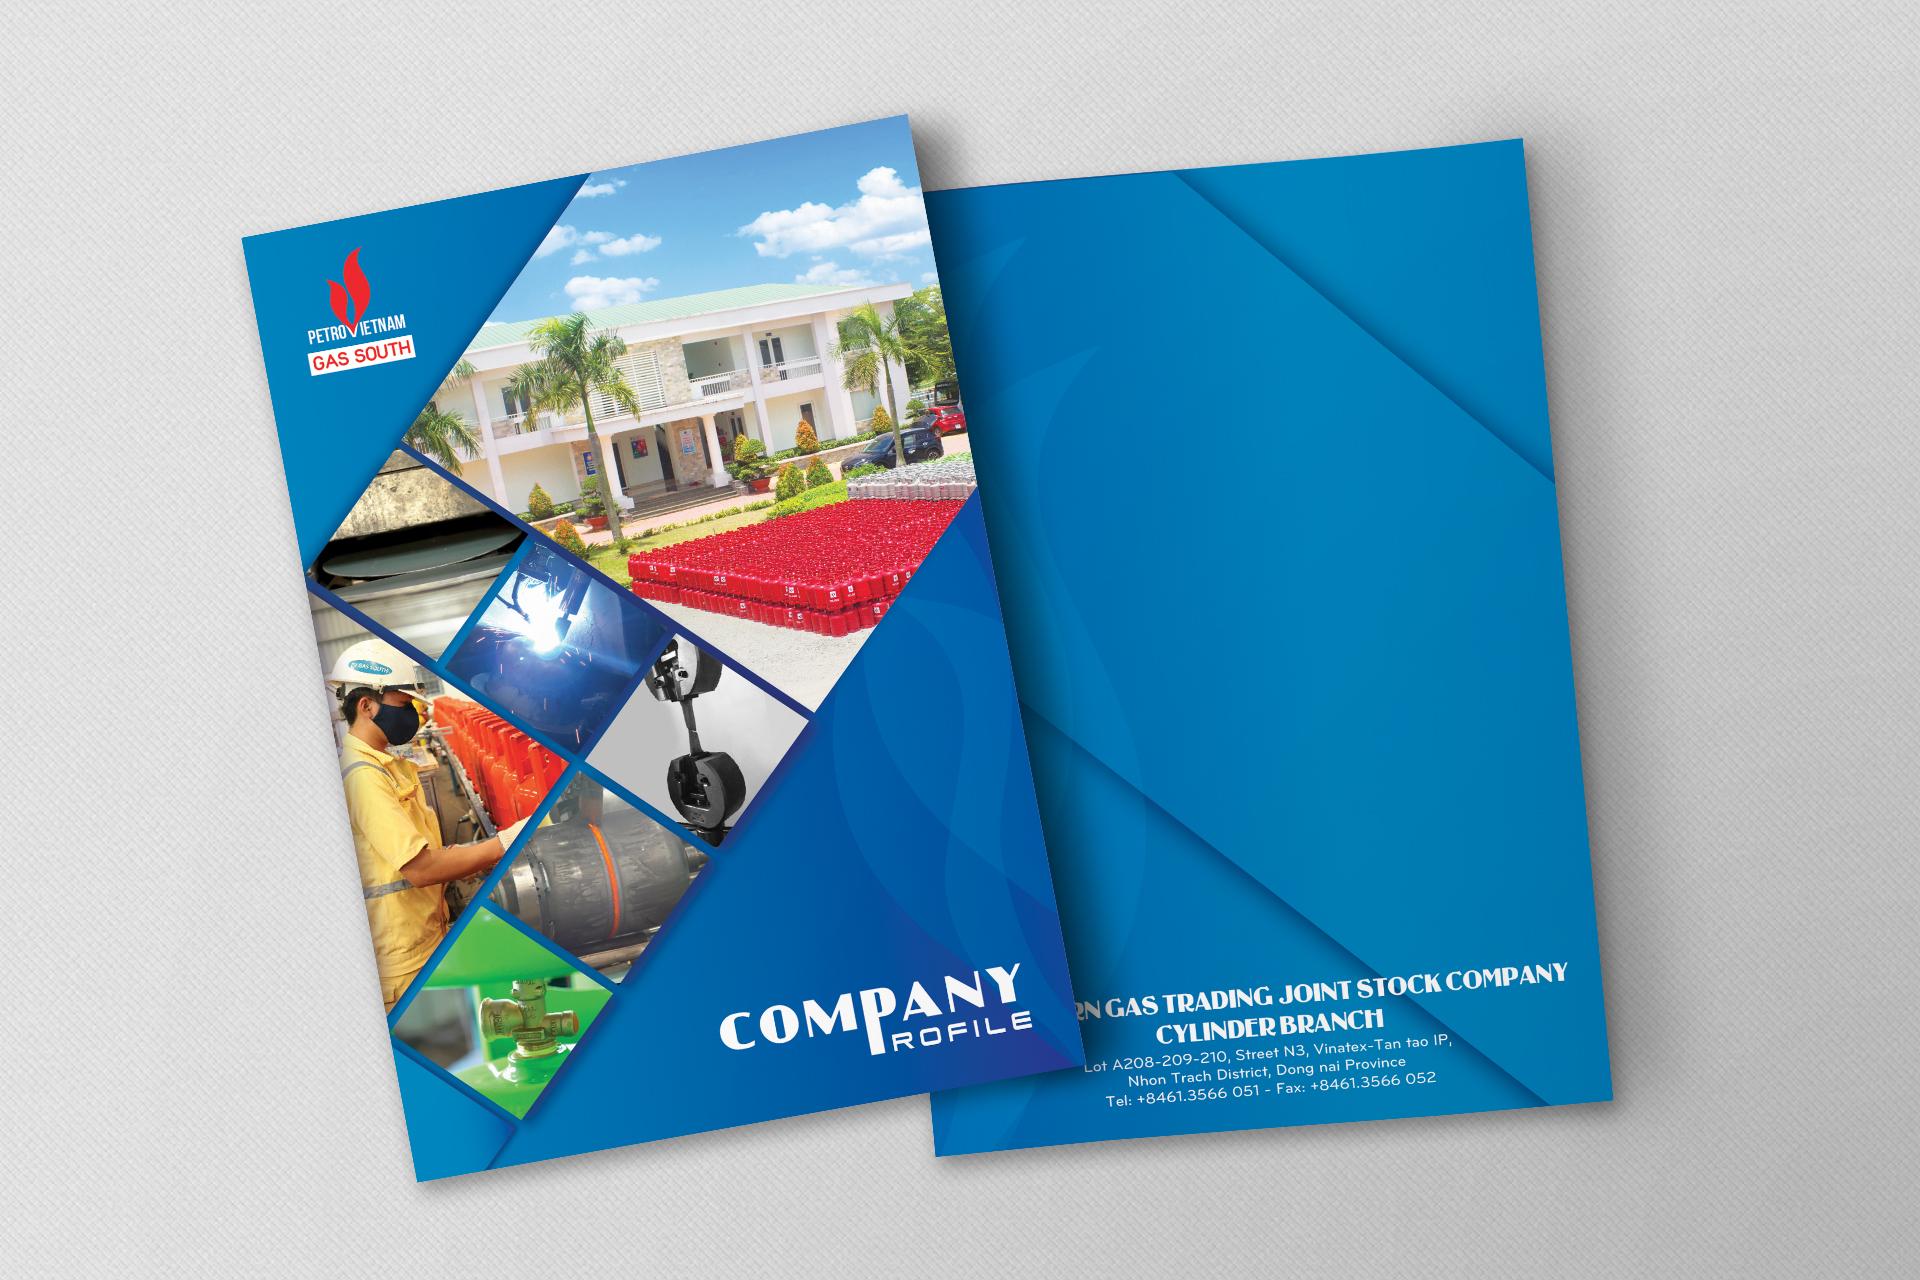 Thiết kế in ấn Catalog cho doanh nghiệp